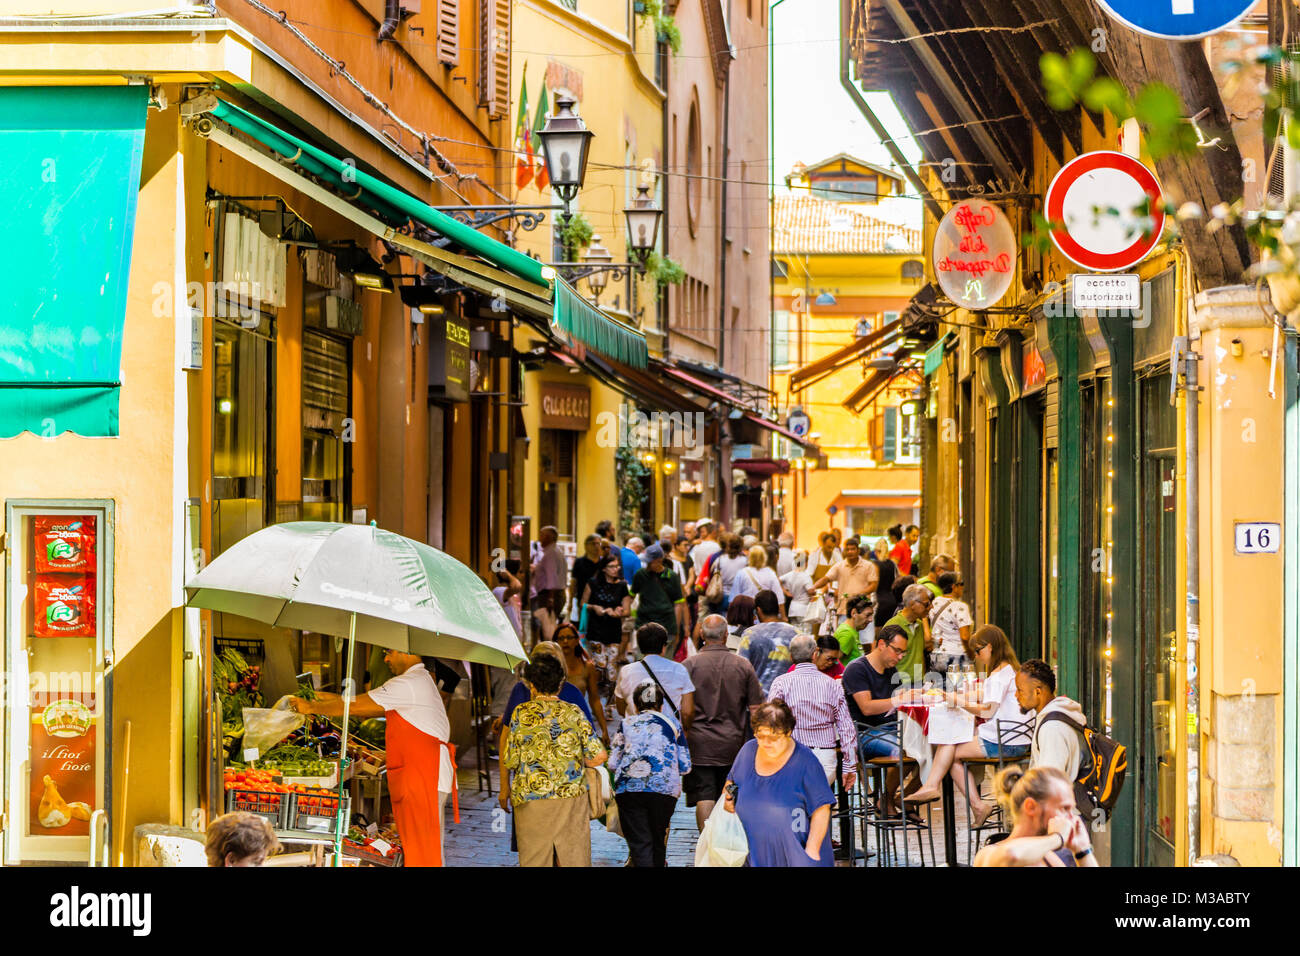 BOLOGNA, Italien - 27. AUGUST 2016: Touristen und Einheimische einkaufen gehen in der mittelalterlichen Markt. Die Berufung dieser Gegend bekannt als Quadrilatero, Mittelwert Stockfoto